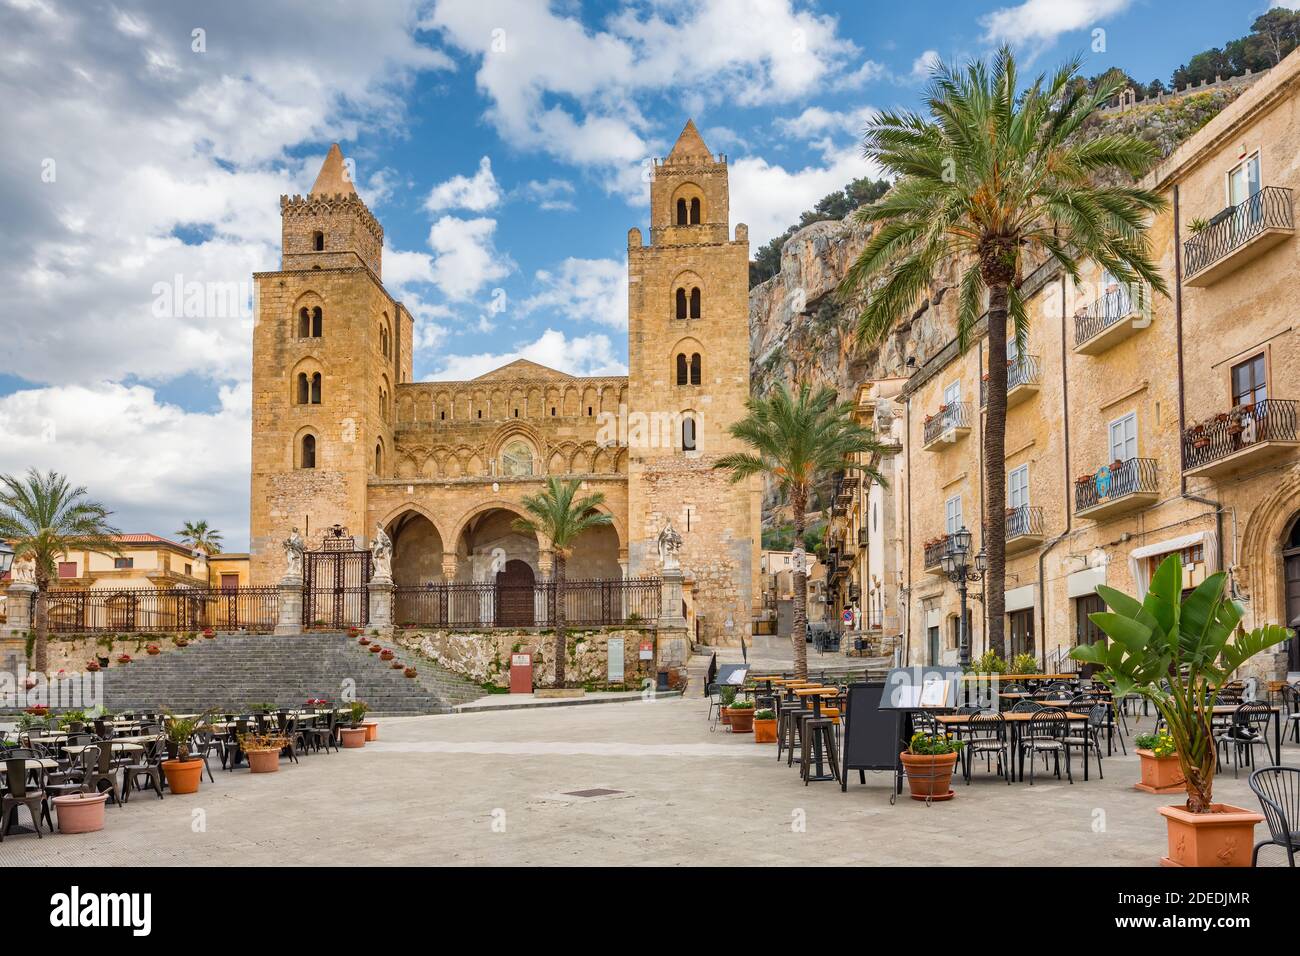 Catedral Basílica de Cefalu en la plaza Piazza del Duomo en el casco antiguo de Cefalu, Sicilia Foto de stock